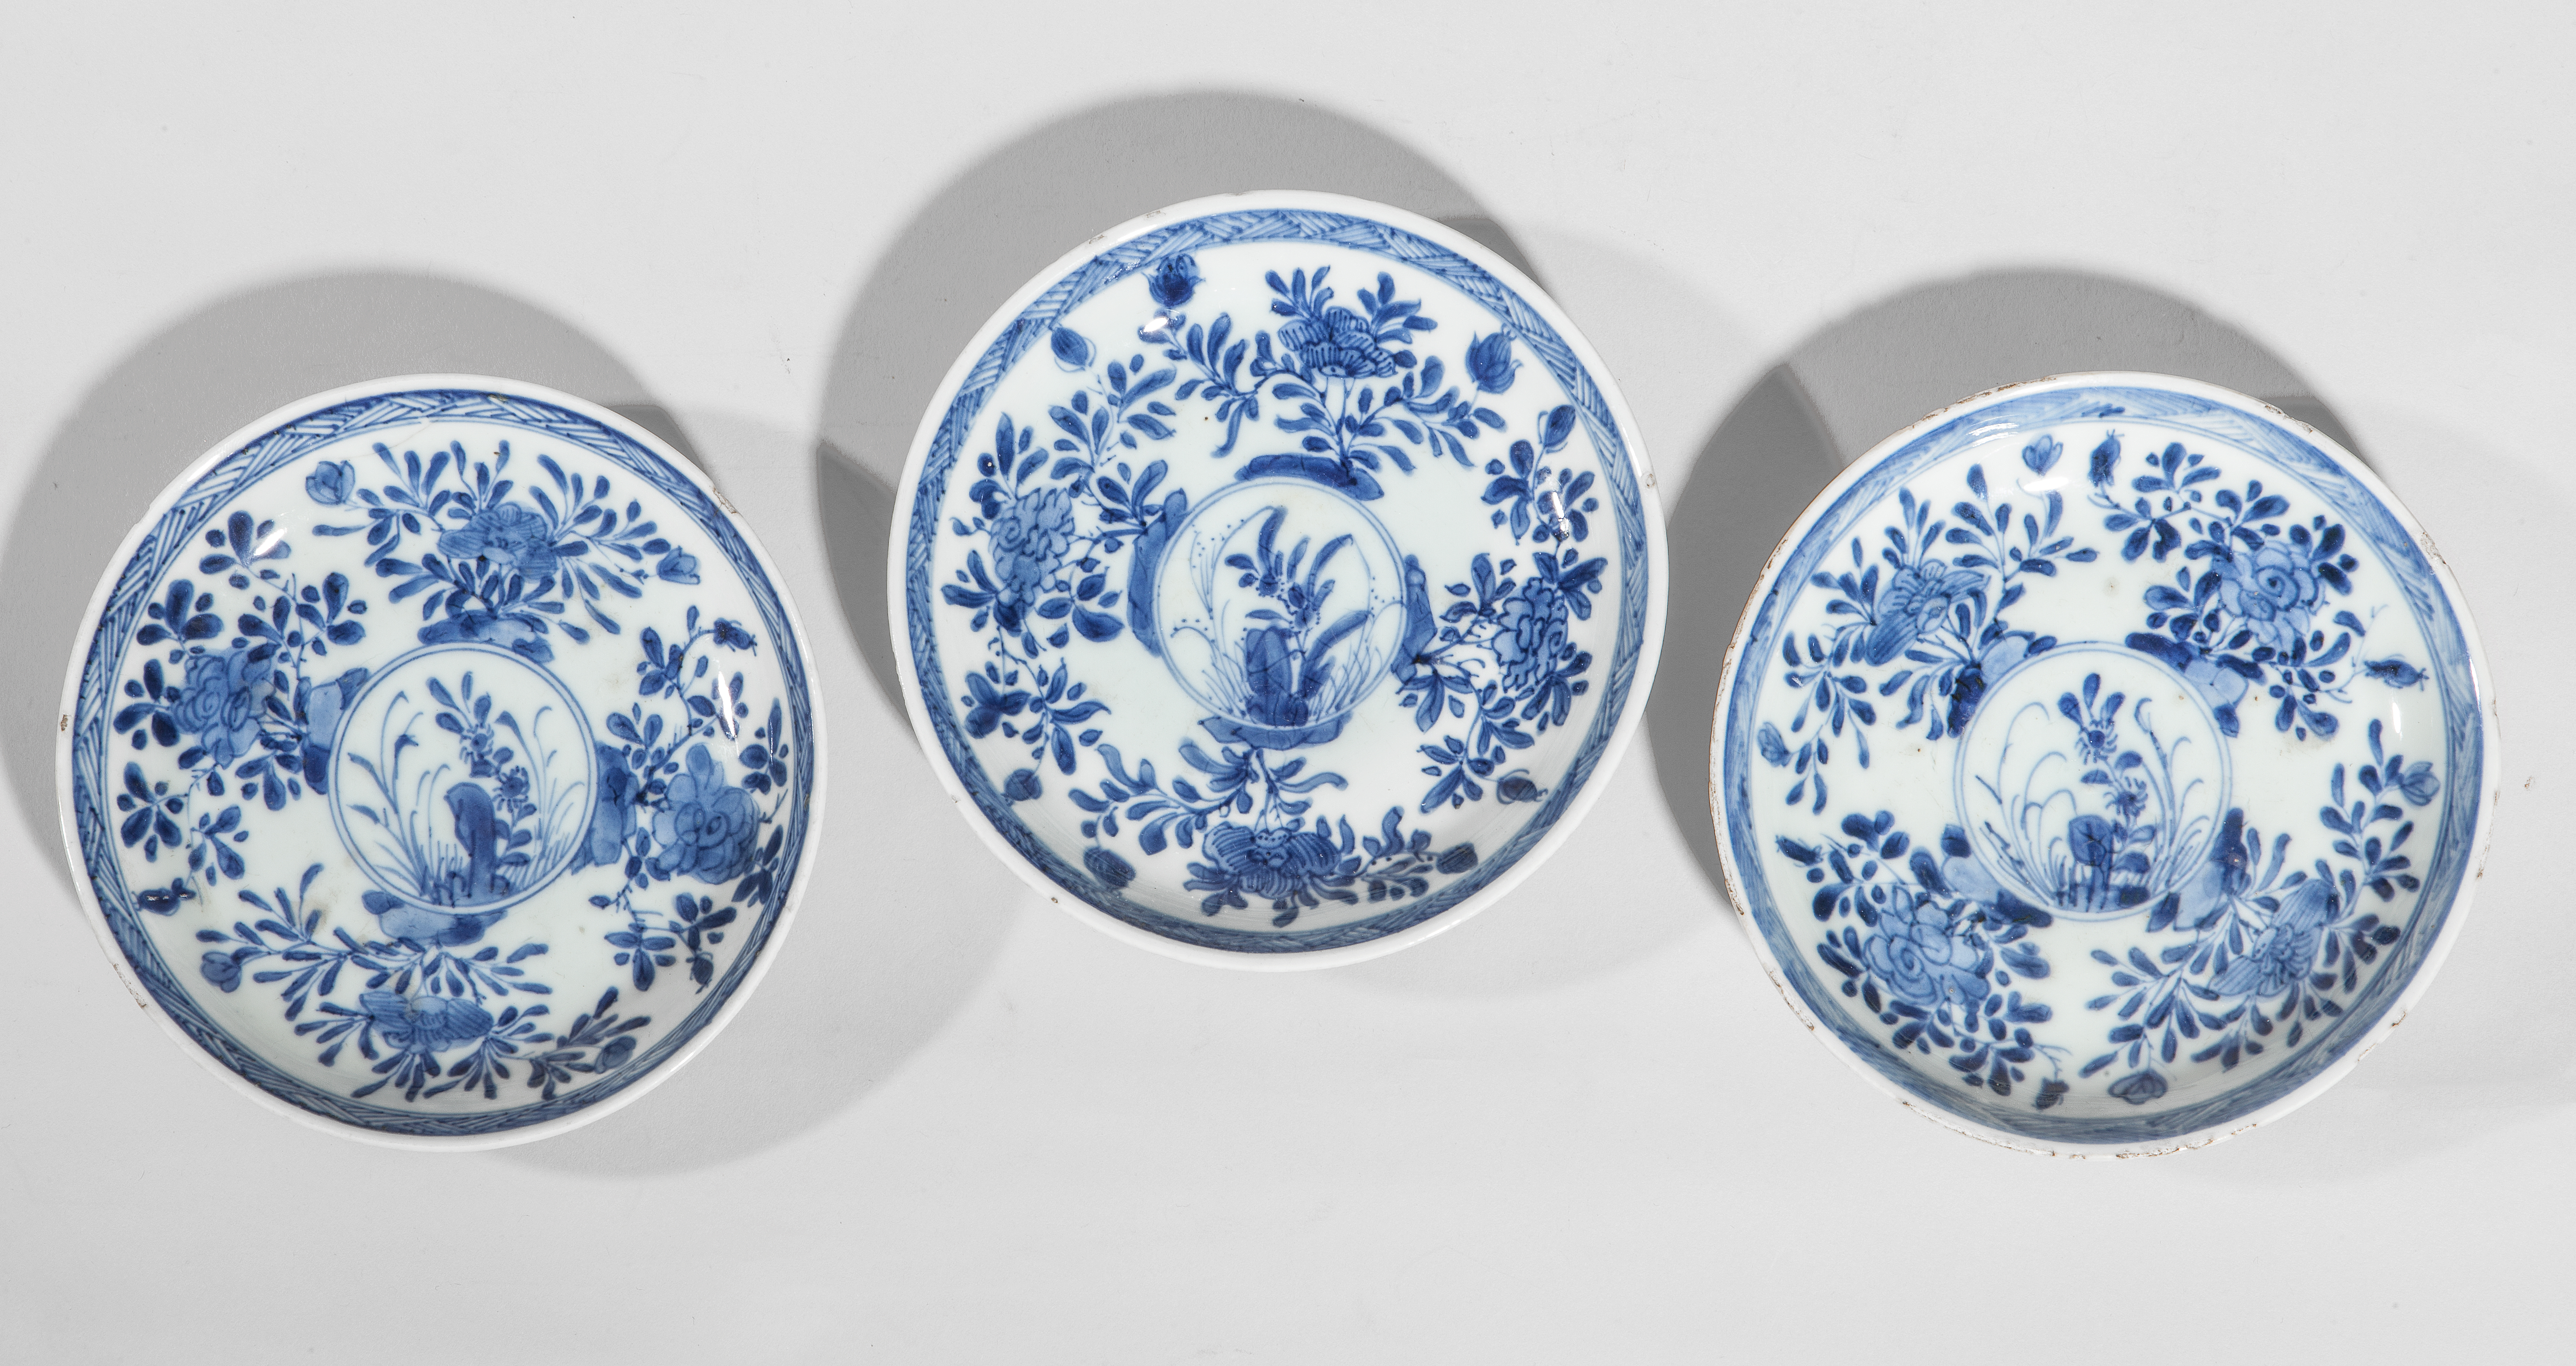 Trois coupelles en porcelaine blanche décoré de motifs floraux en bleu cobalt sous [...] - Image 2 of 2